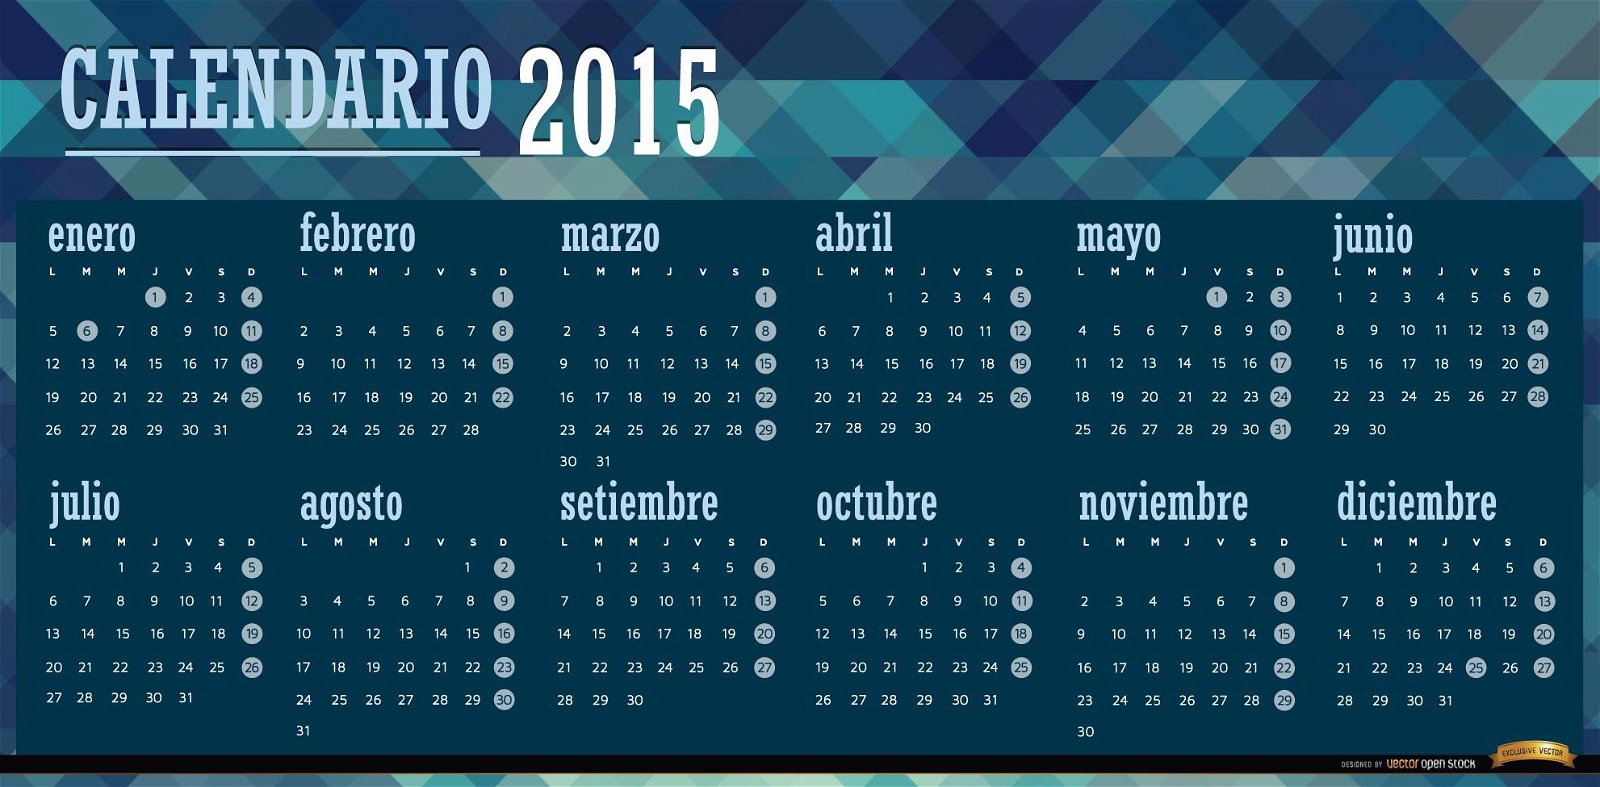 2015 calend?rio poligonal azul espanhol